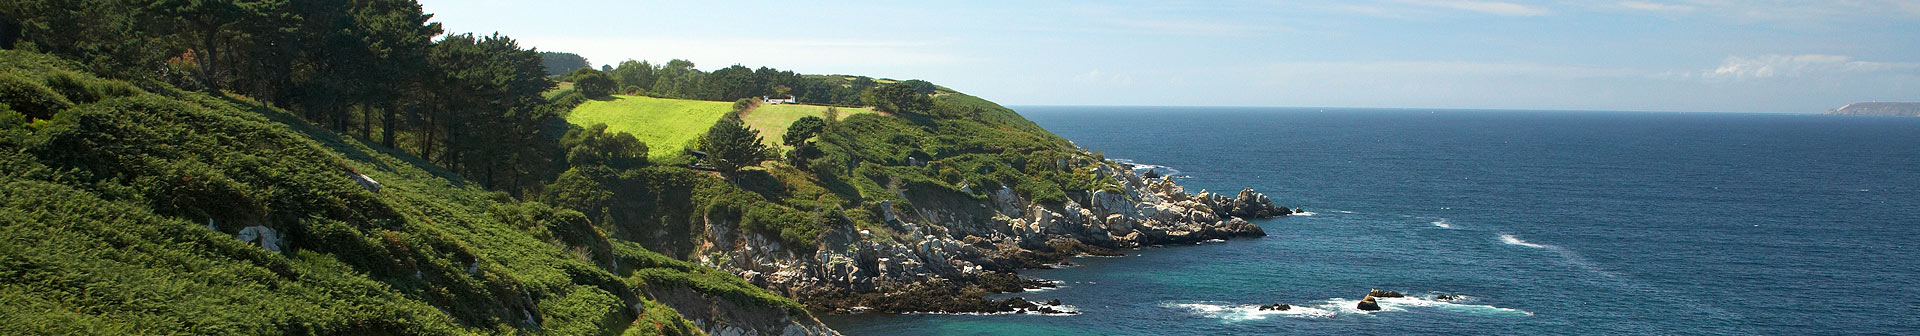 La Pointe du Raz, côte du Finistère, nature et paysage